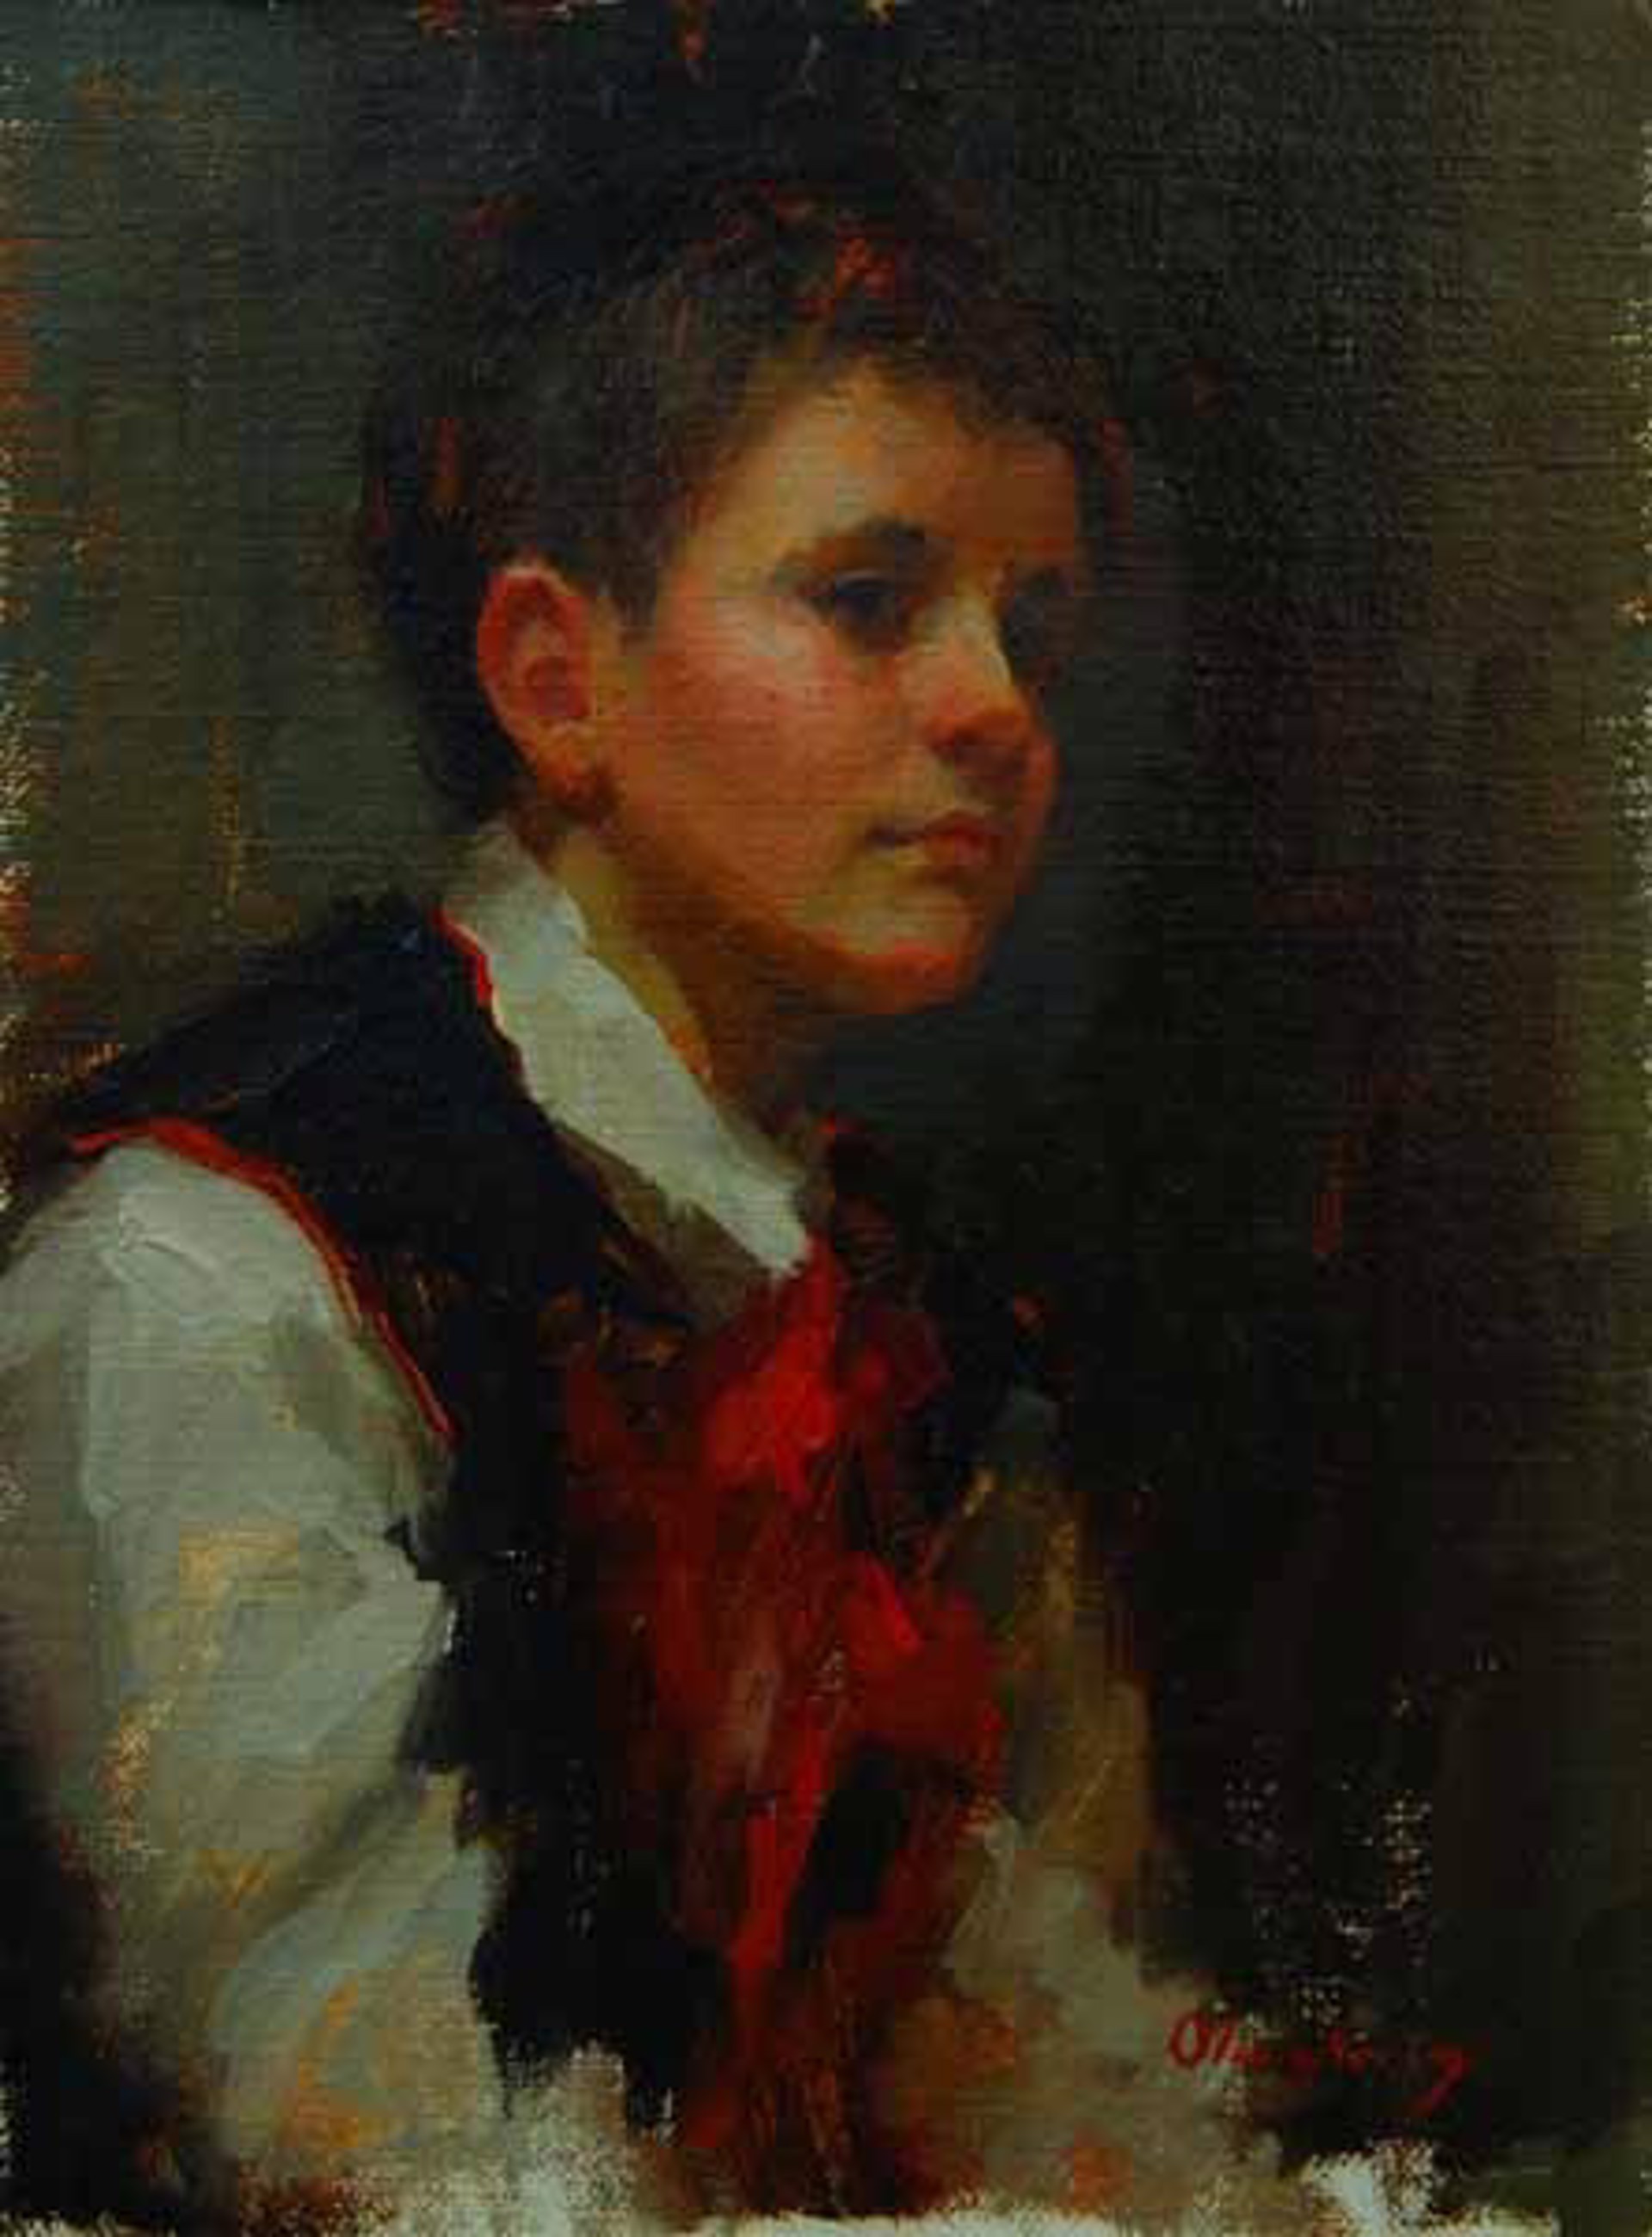 Young Boy In Vest by Marci Oleszkiewicz